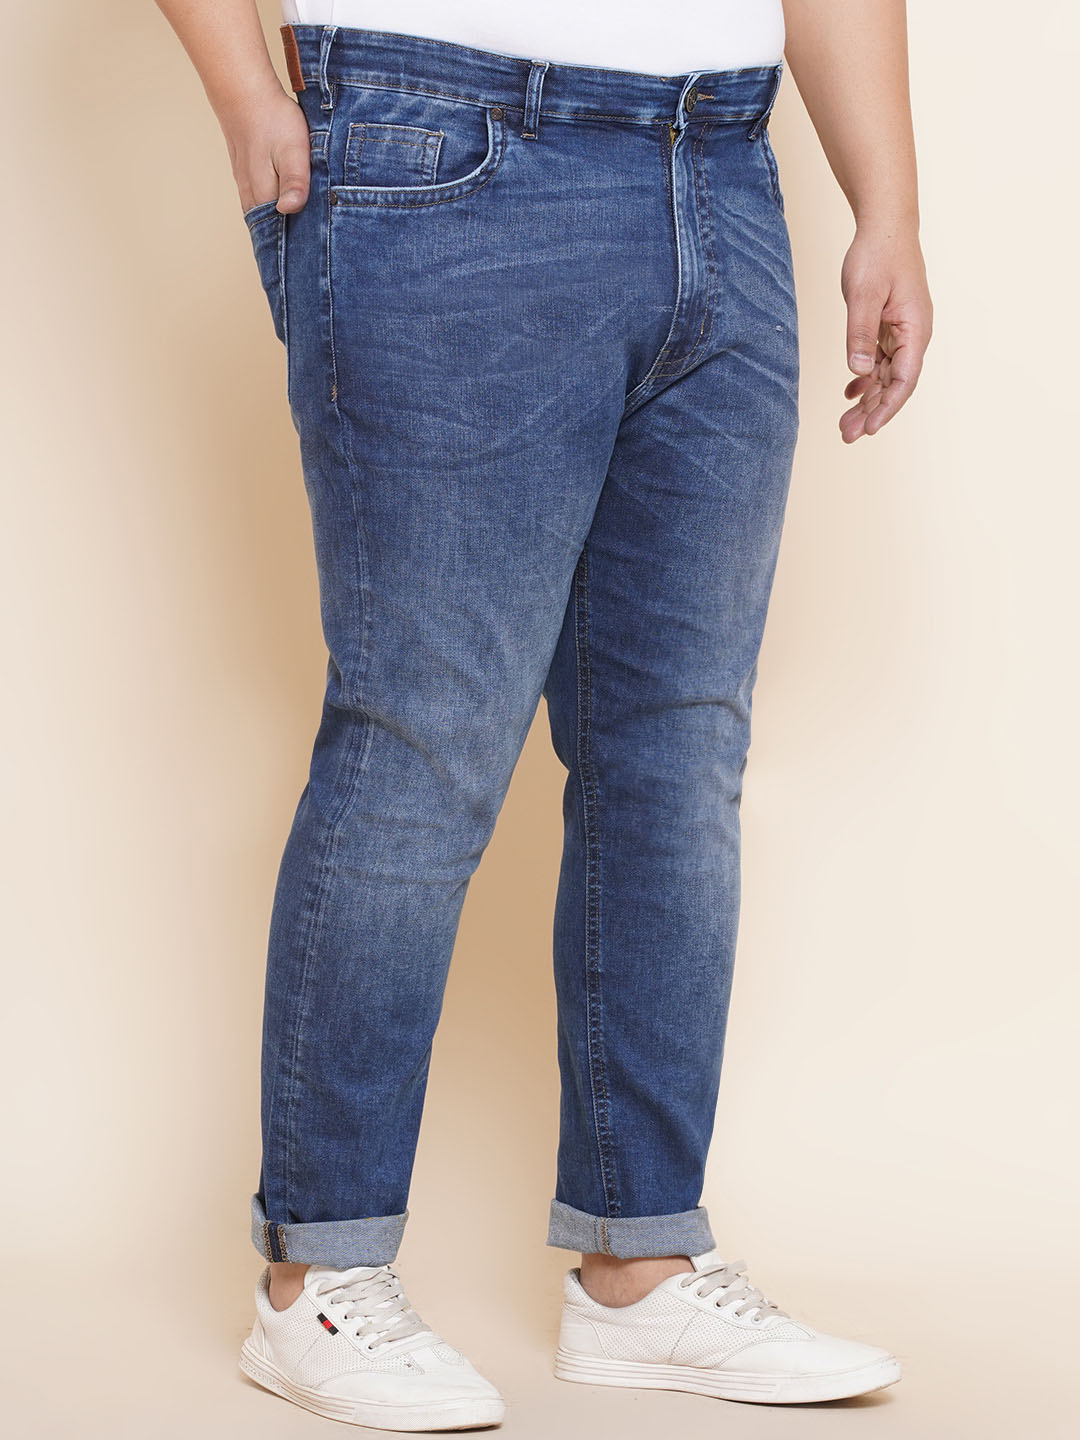 bottomwear/jeans/JPJ12298/jpj12298-3.jpg